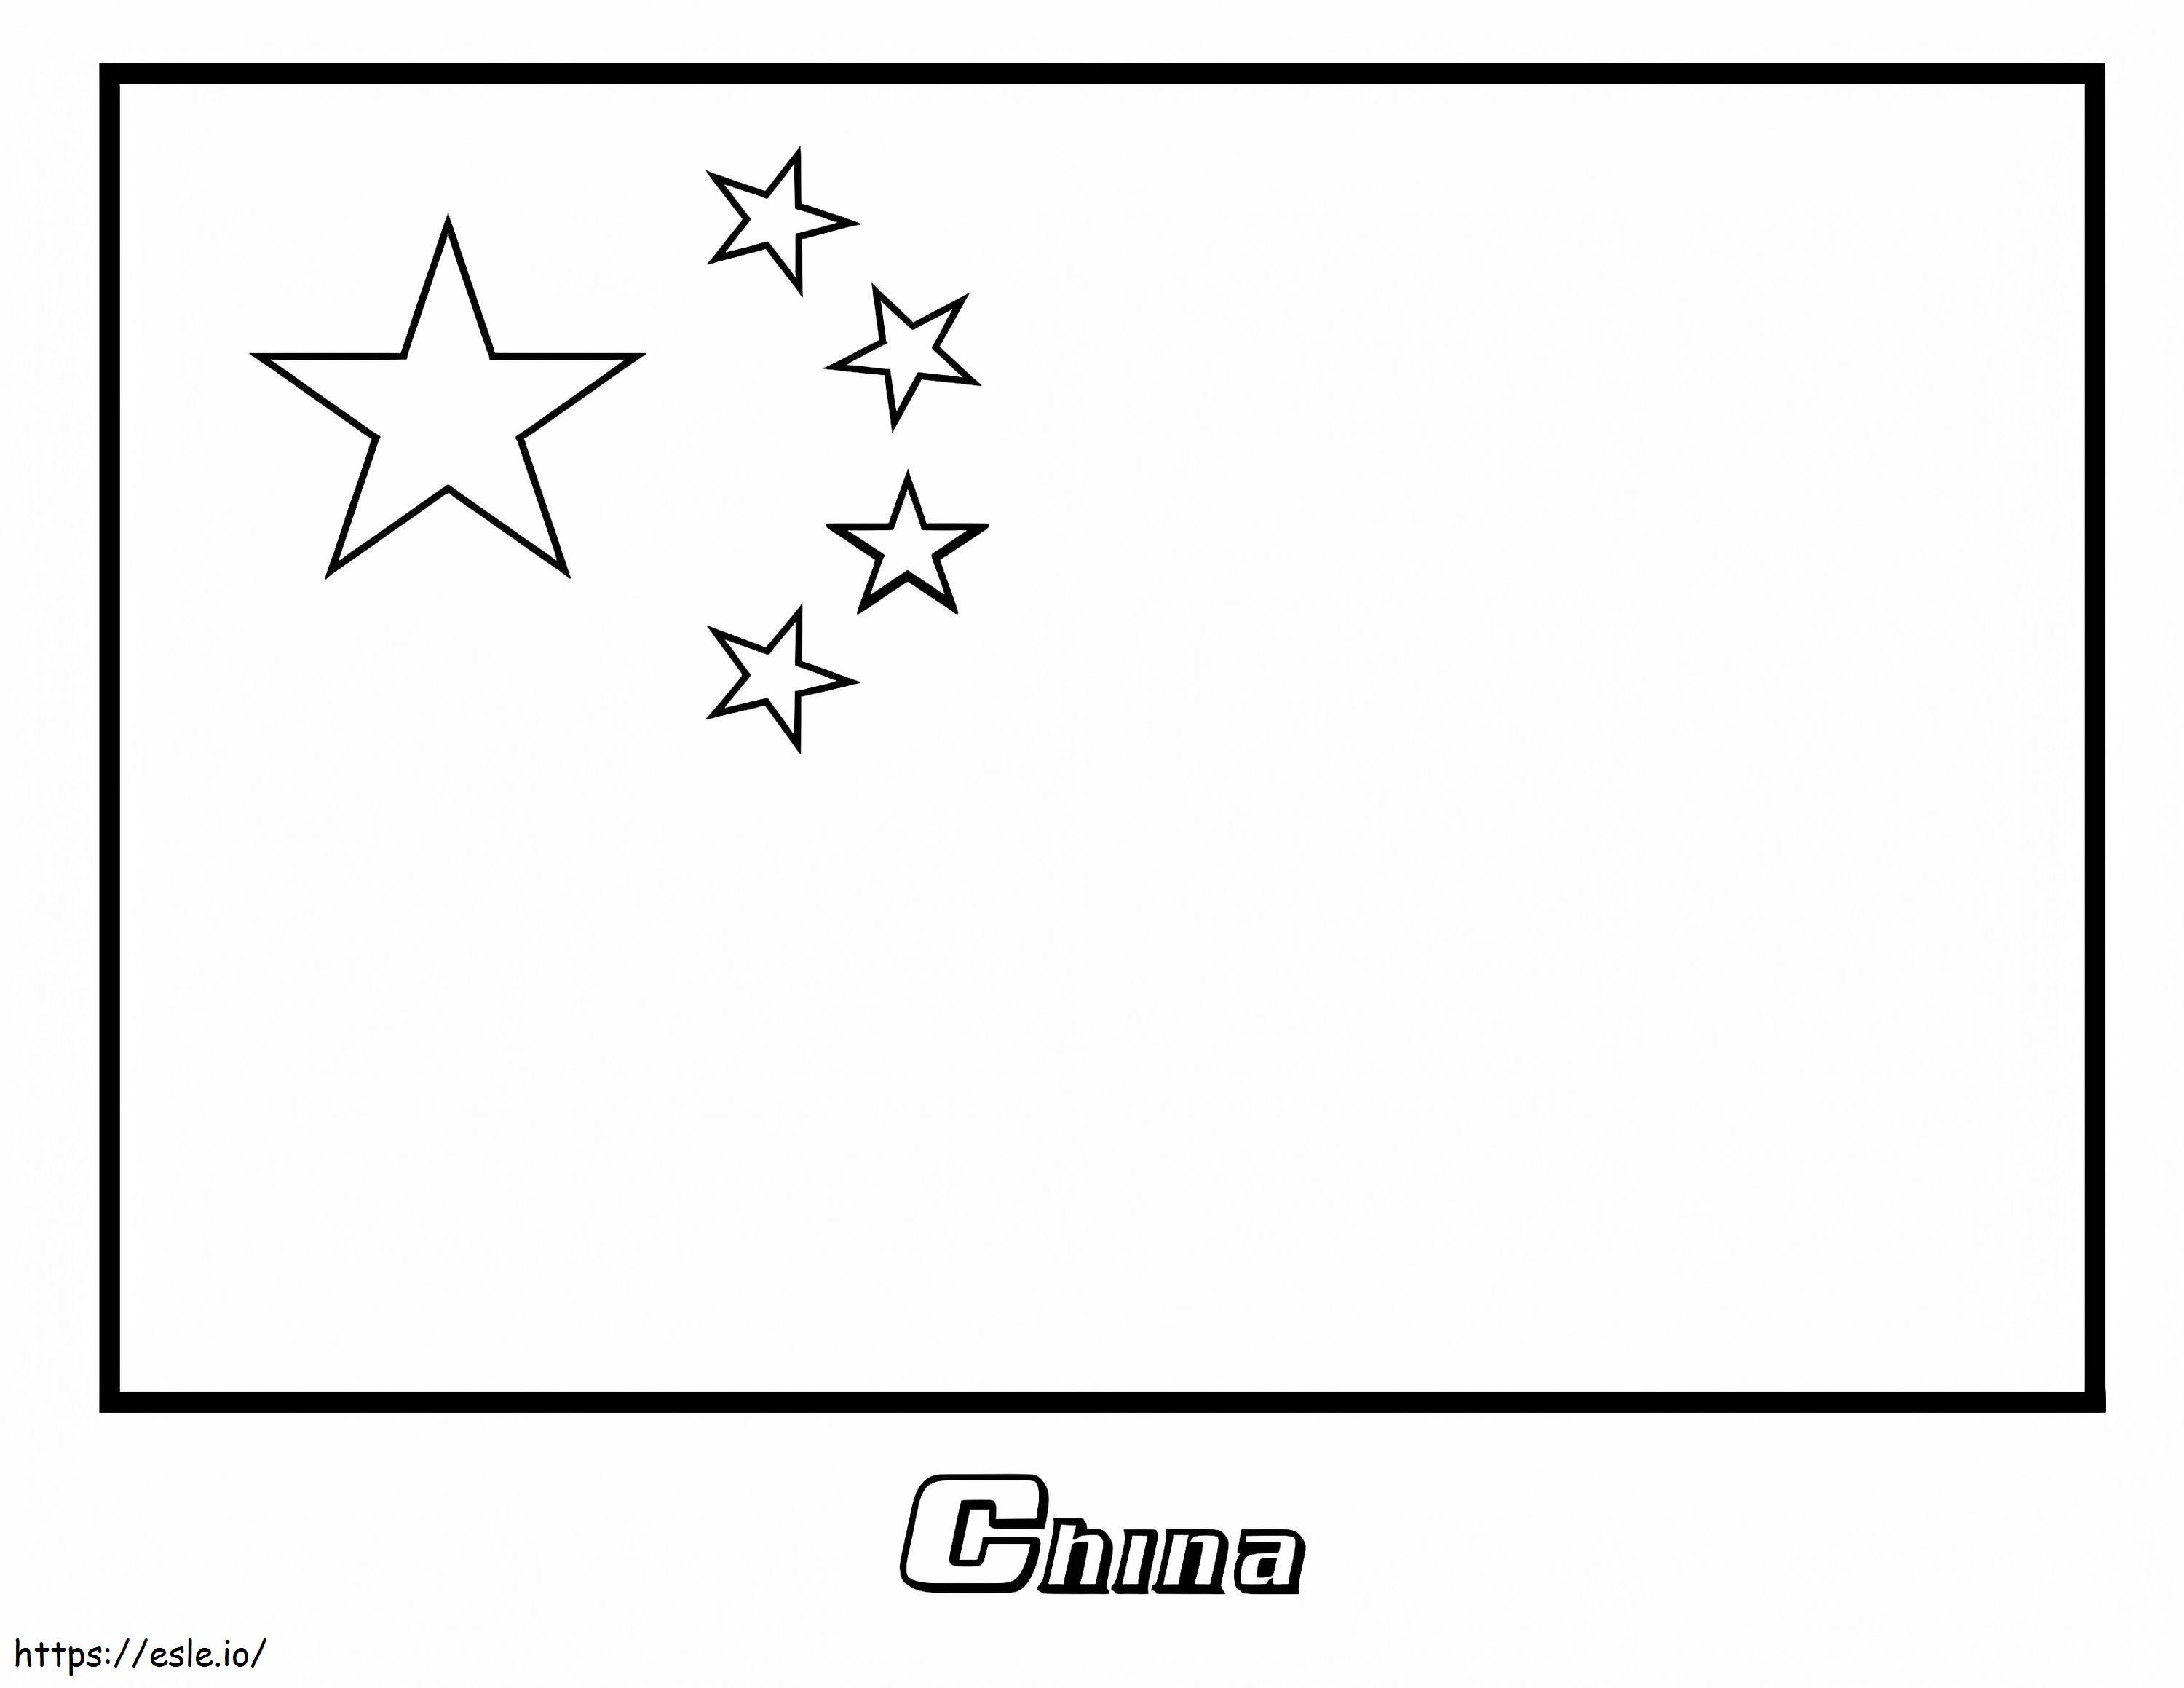 Bandeira da China para colorir